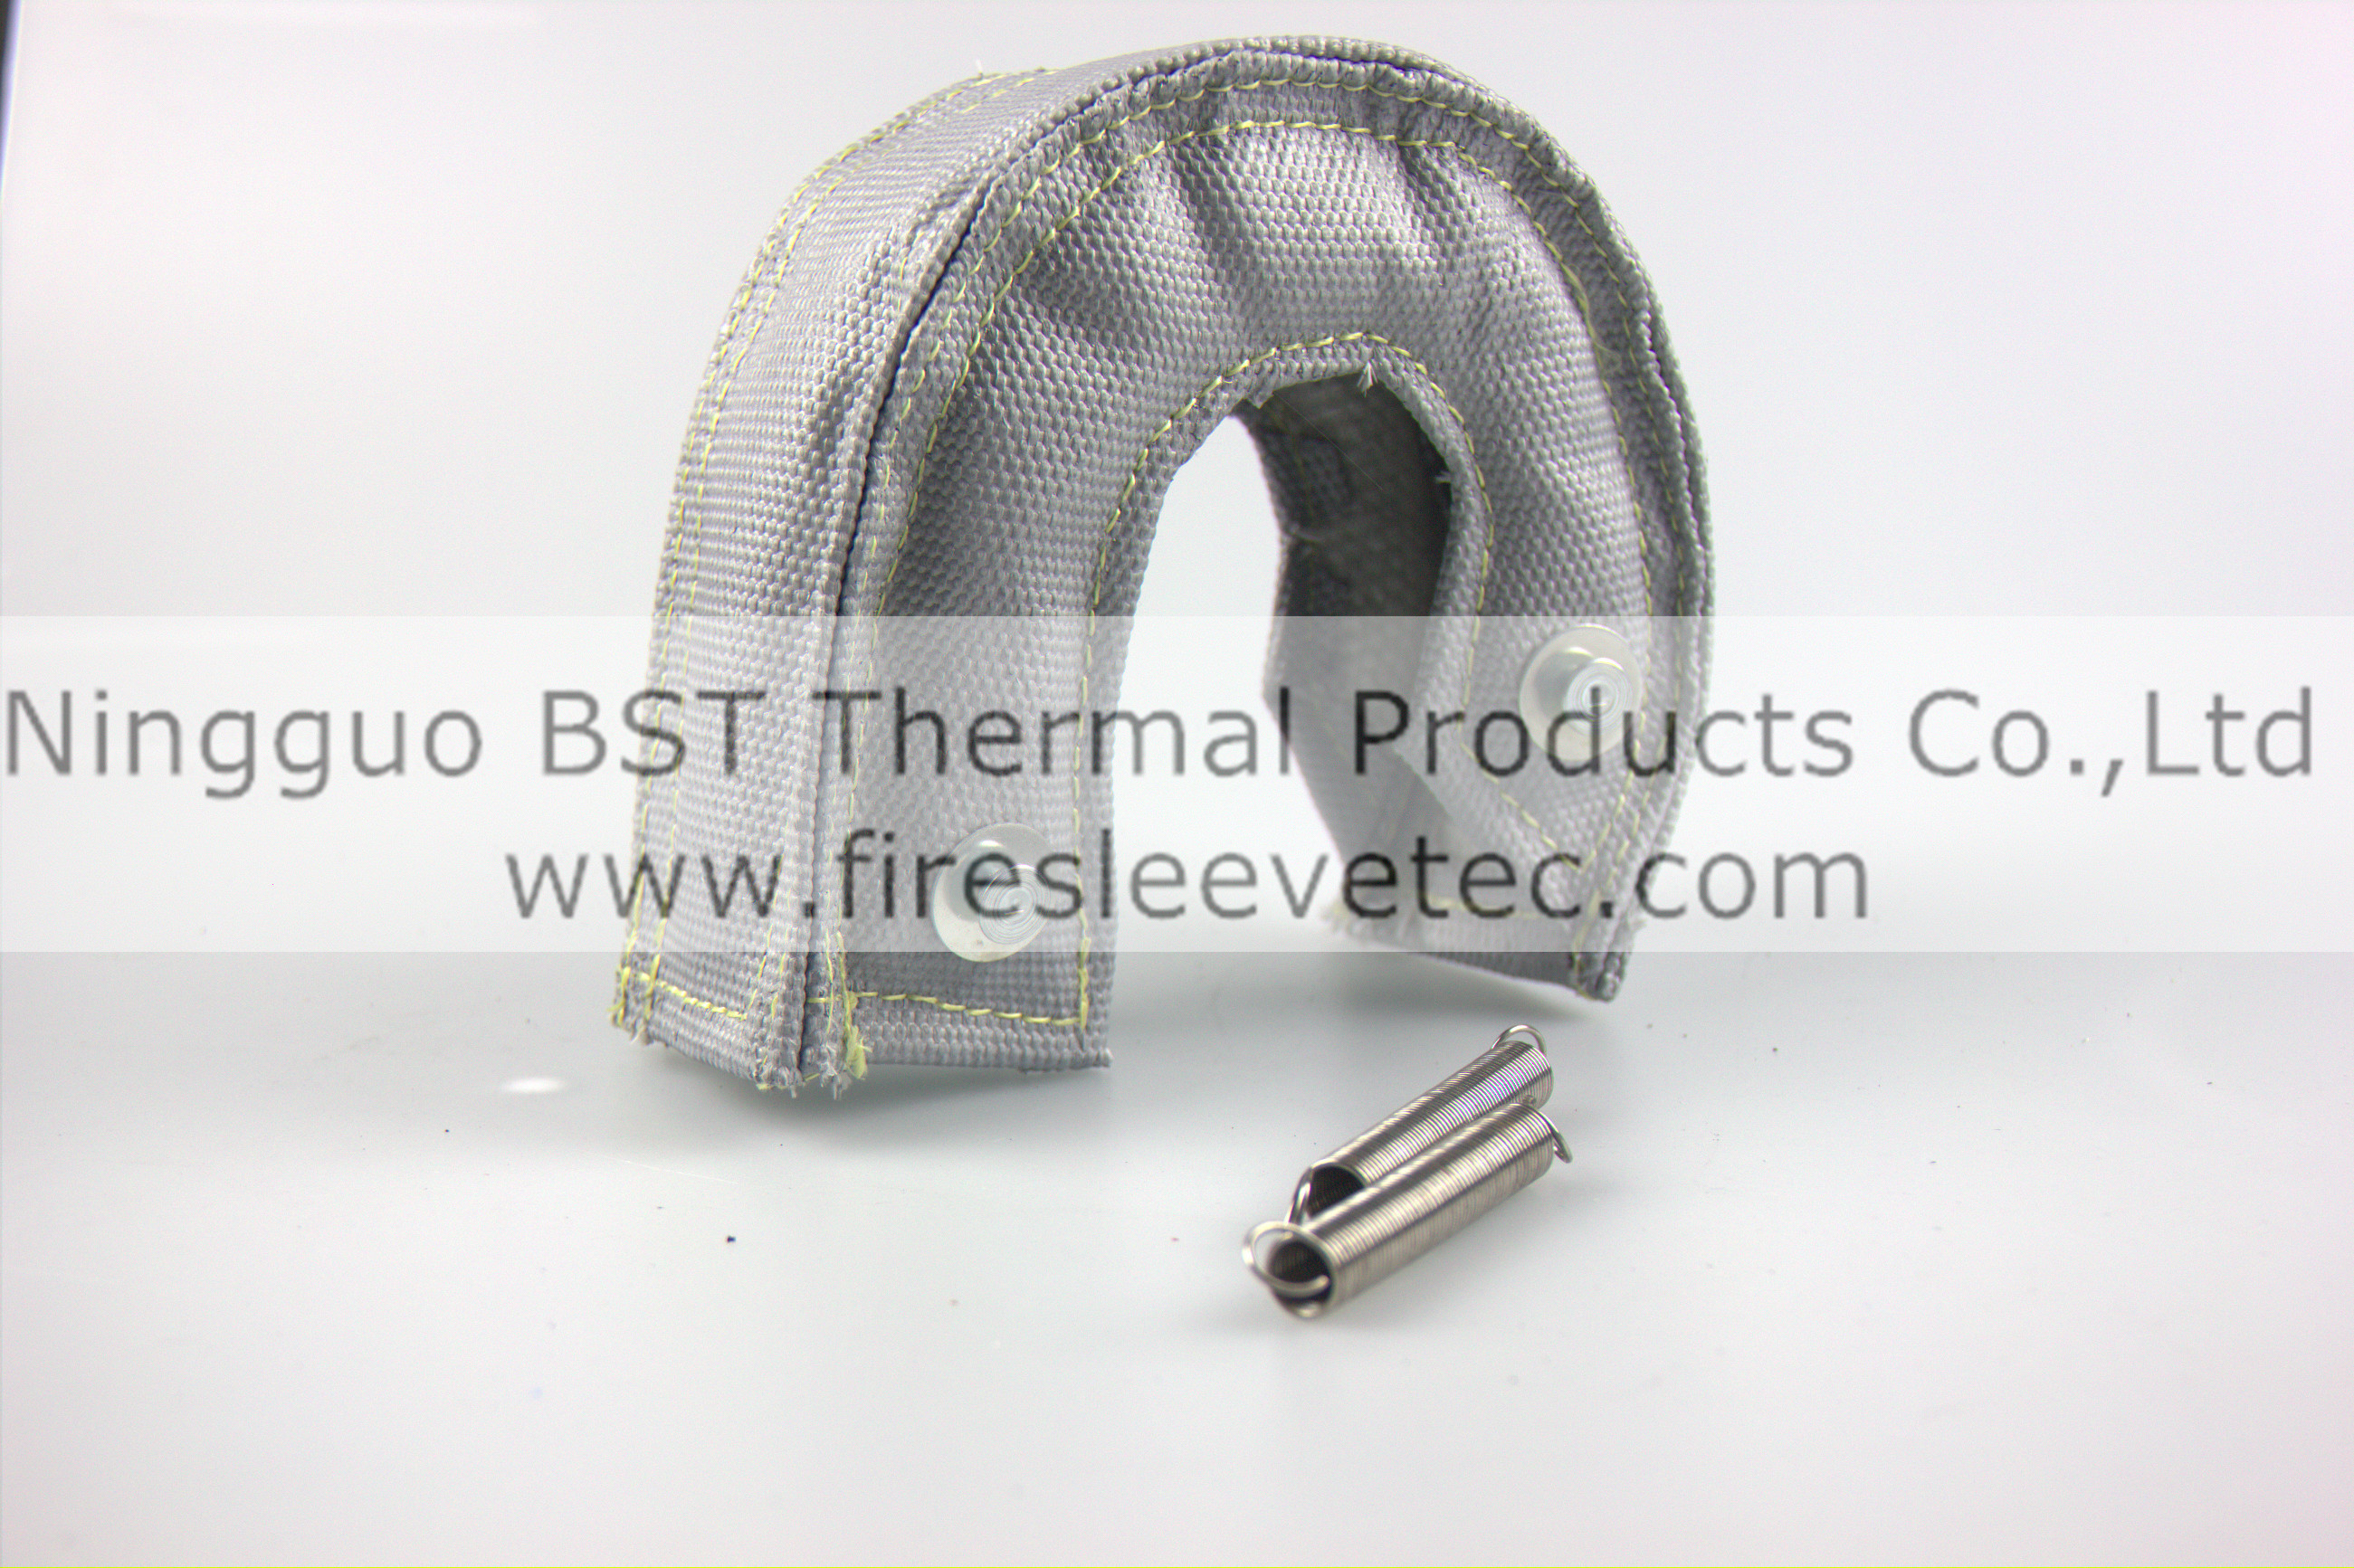 Turbo Heat Shield Blanket